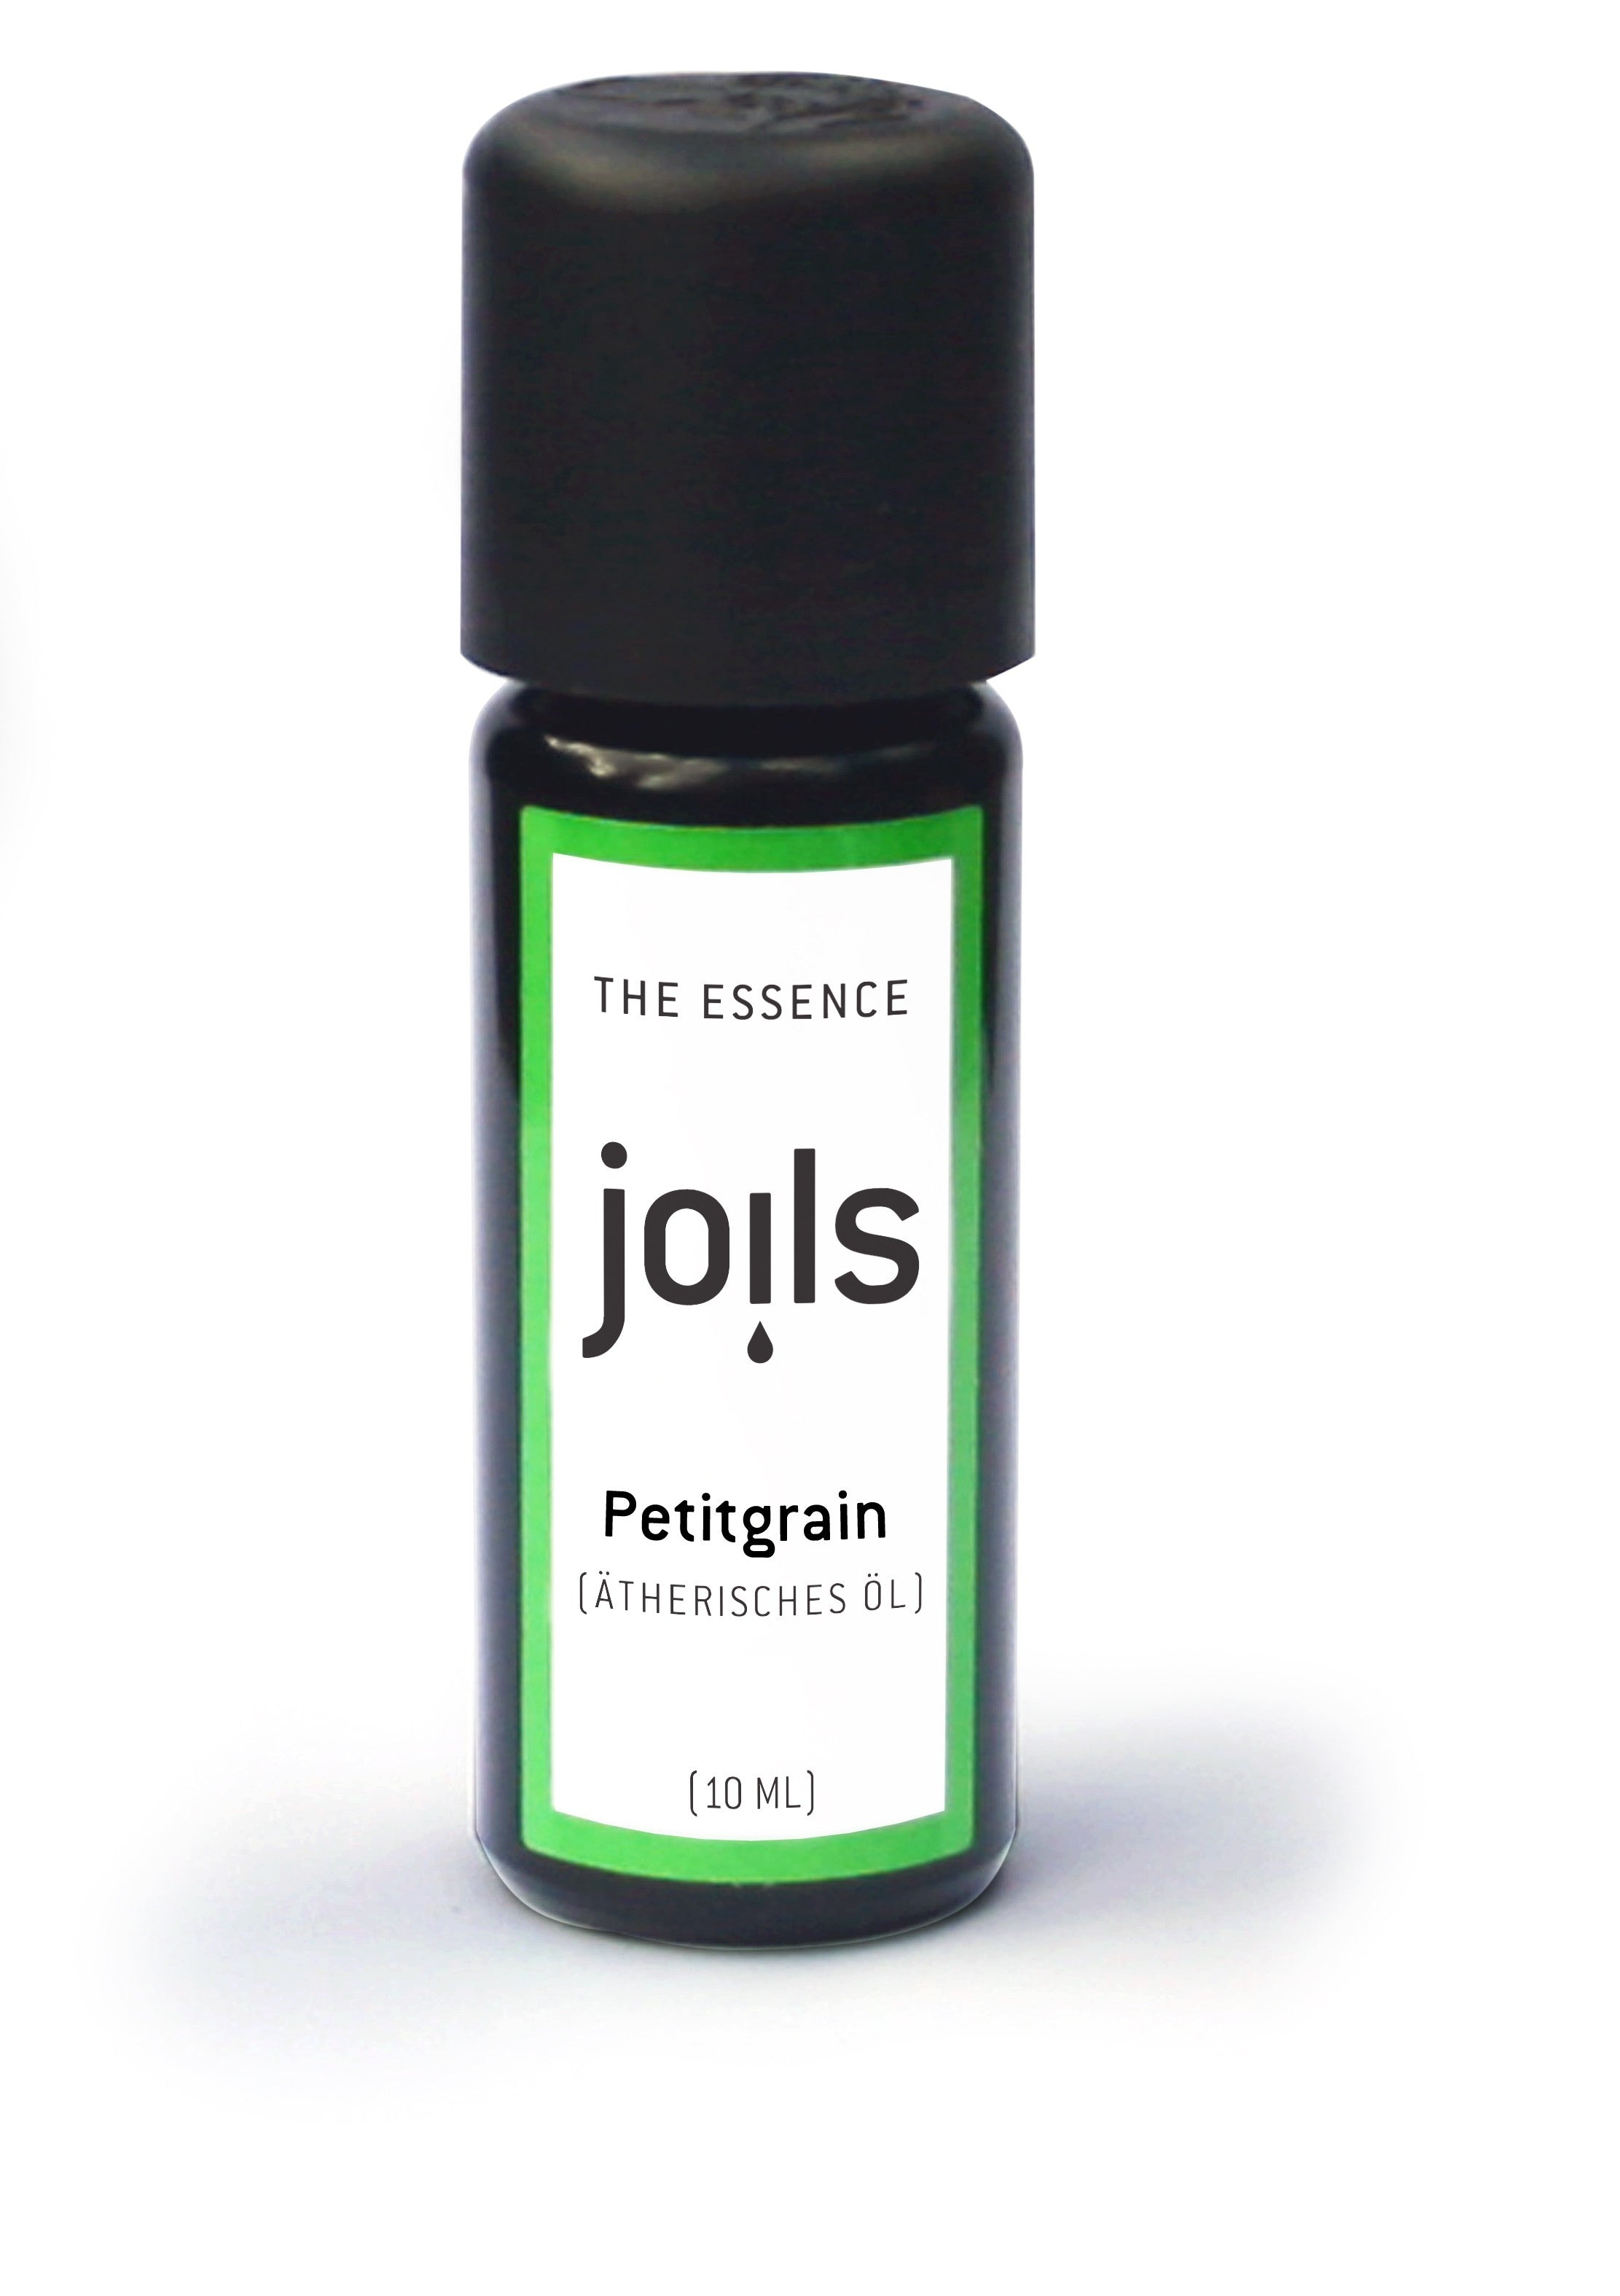 PETITGRAIN 10ml - Joils